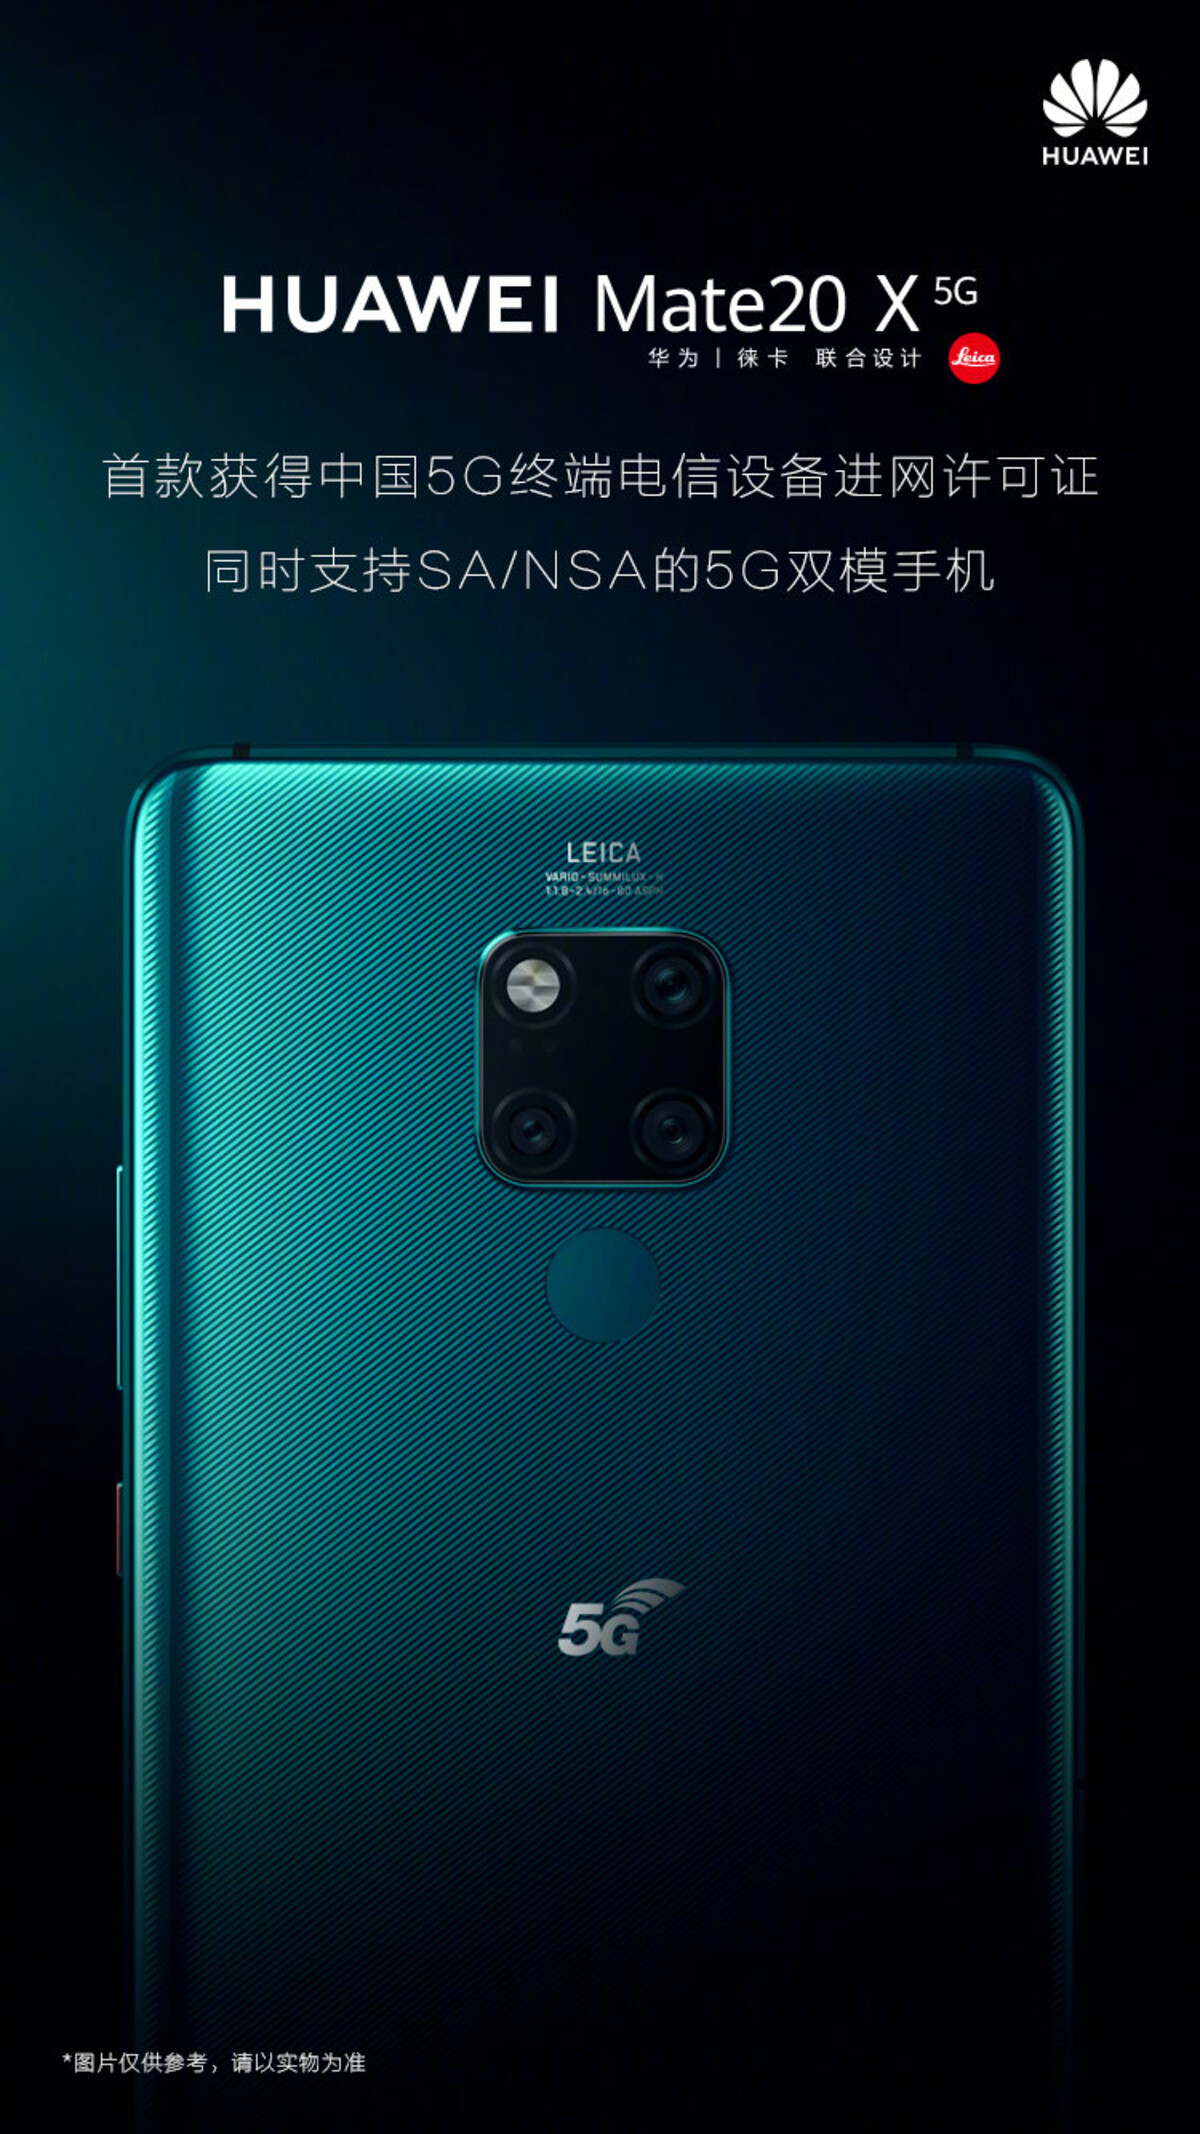 Huawei Mate 20 X 5G devine primul dispozitiv care primeste licenta de acces la reteaua de telecomunicatii 5G din China